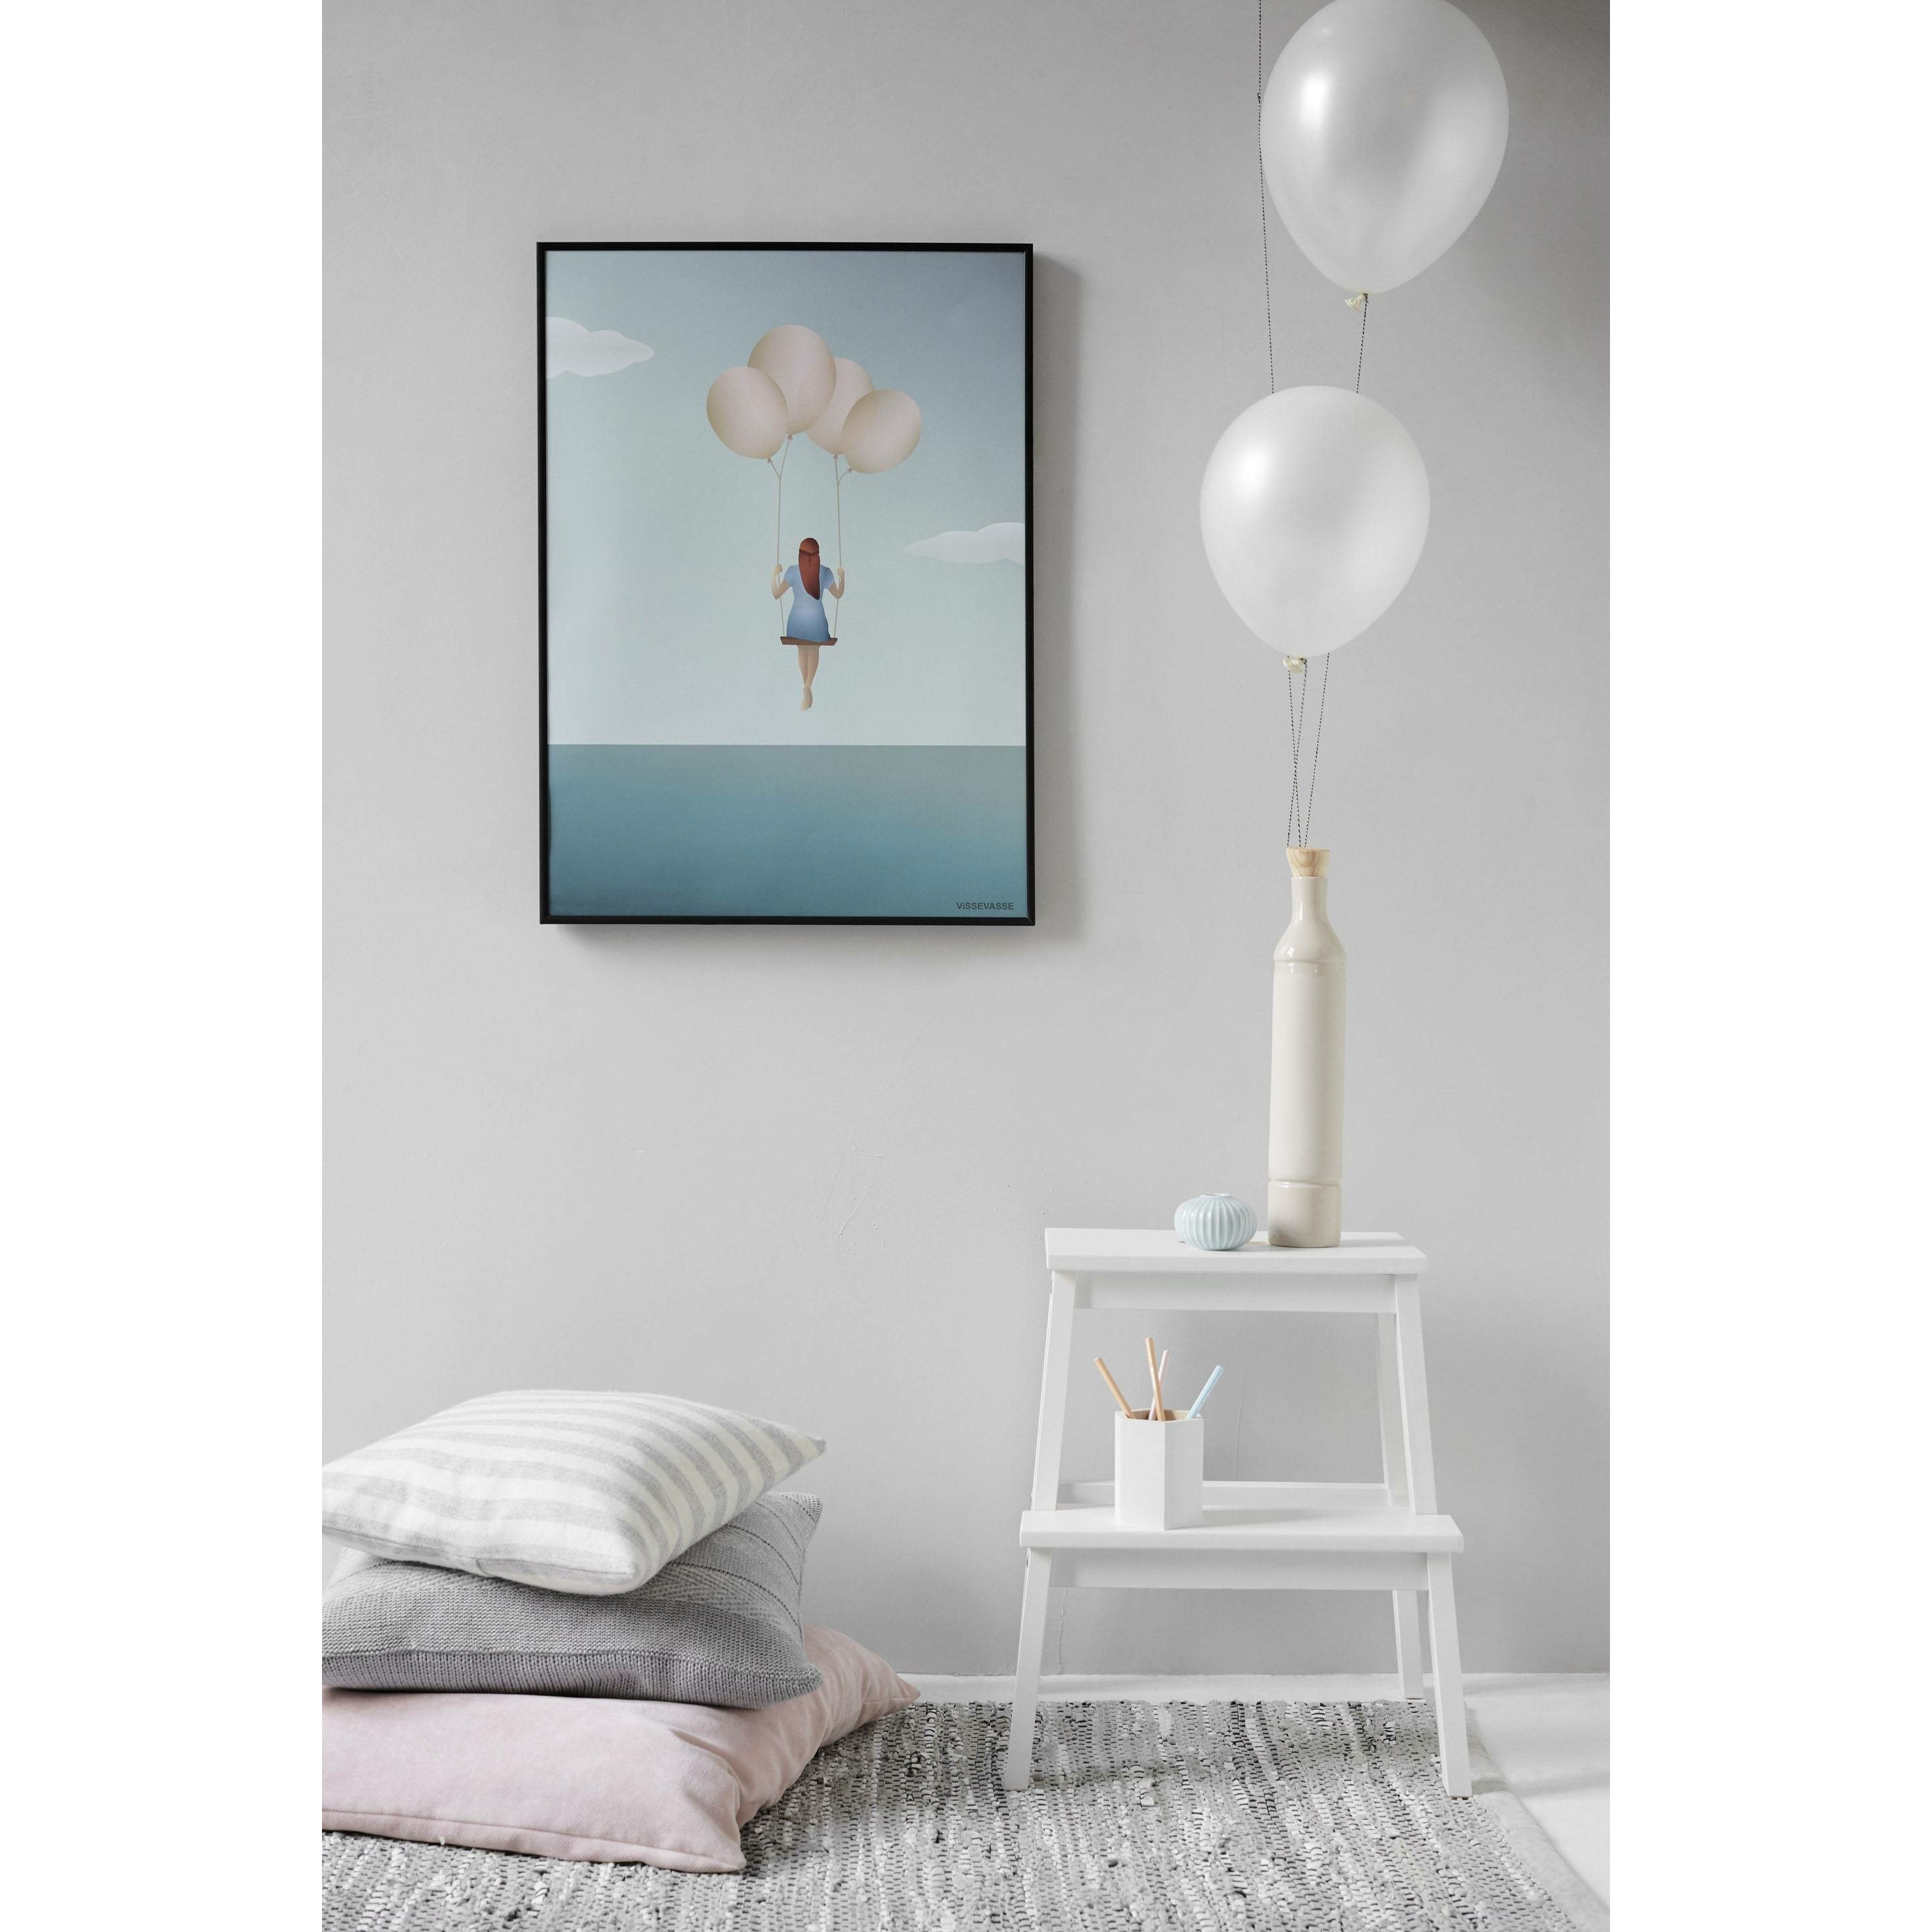 Vissevasse Balloon Dream Plakat, 70 x100 cm